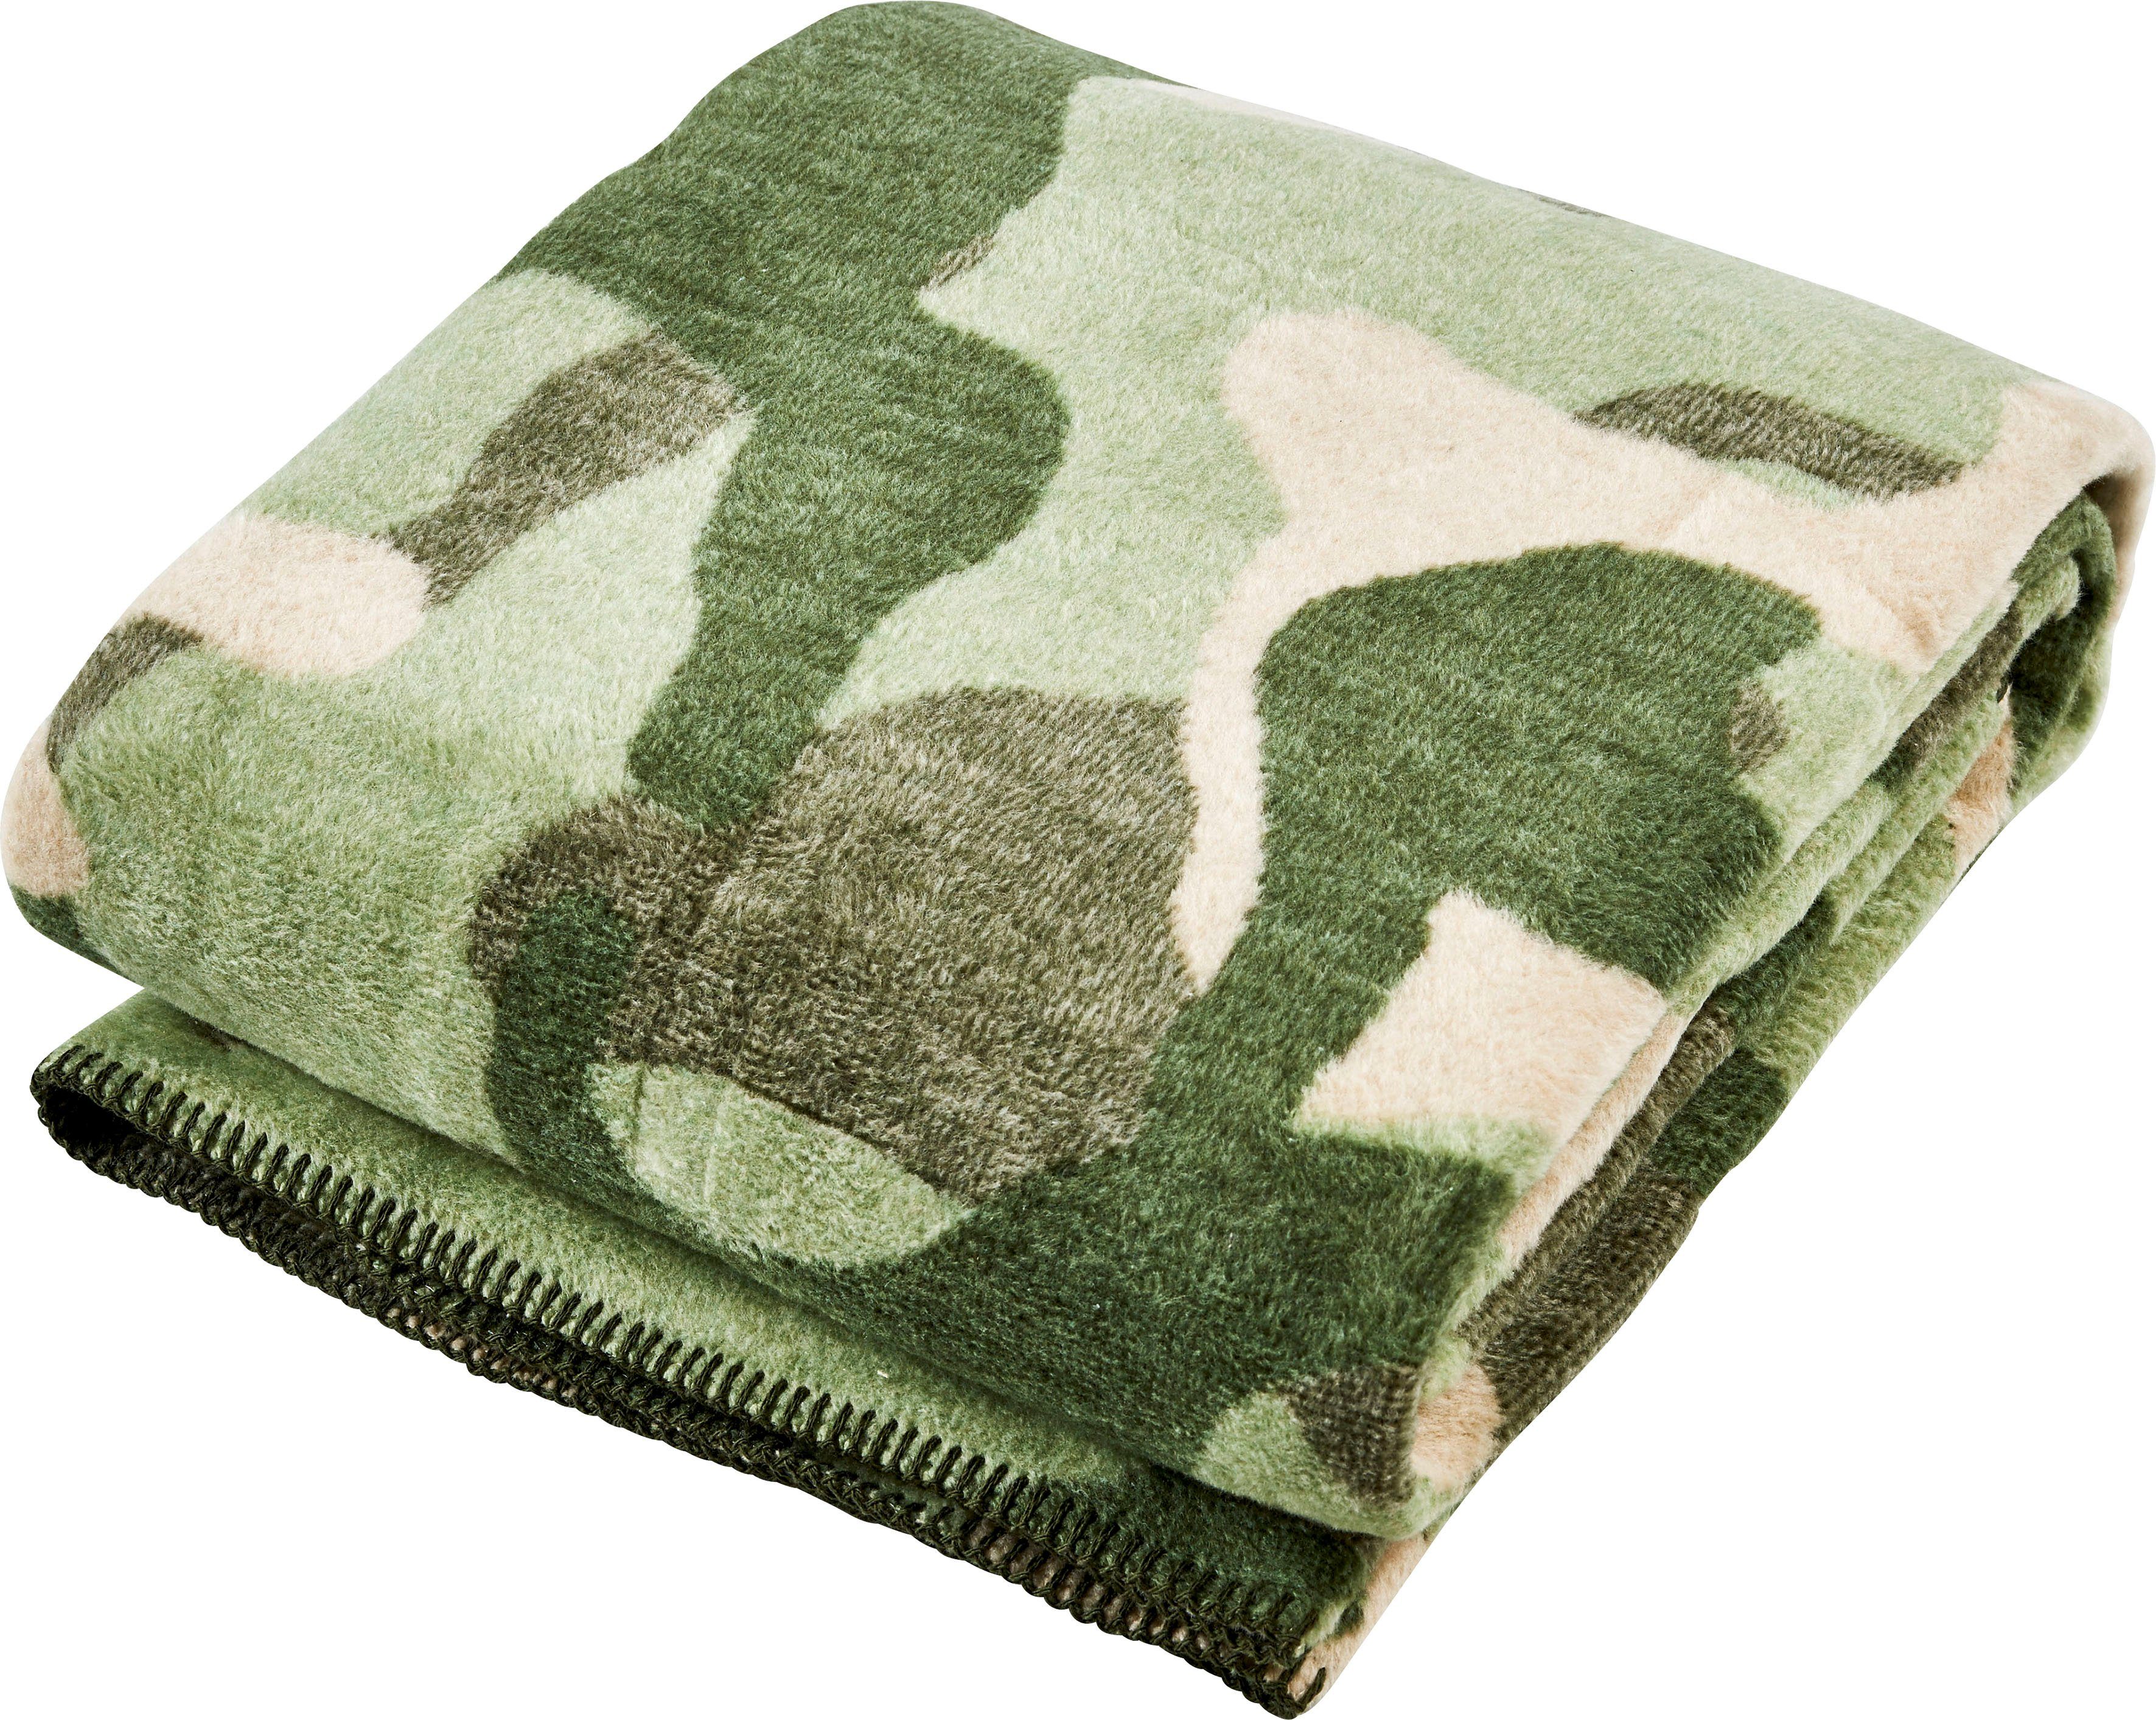 done.®, Ziernaht, Camouflage, Wohndecke einfassender Kuscheldecke Wohndecke khaki/grün/beige mit